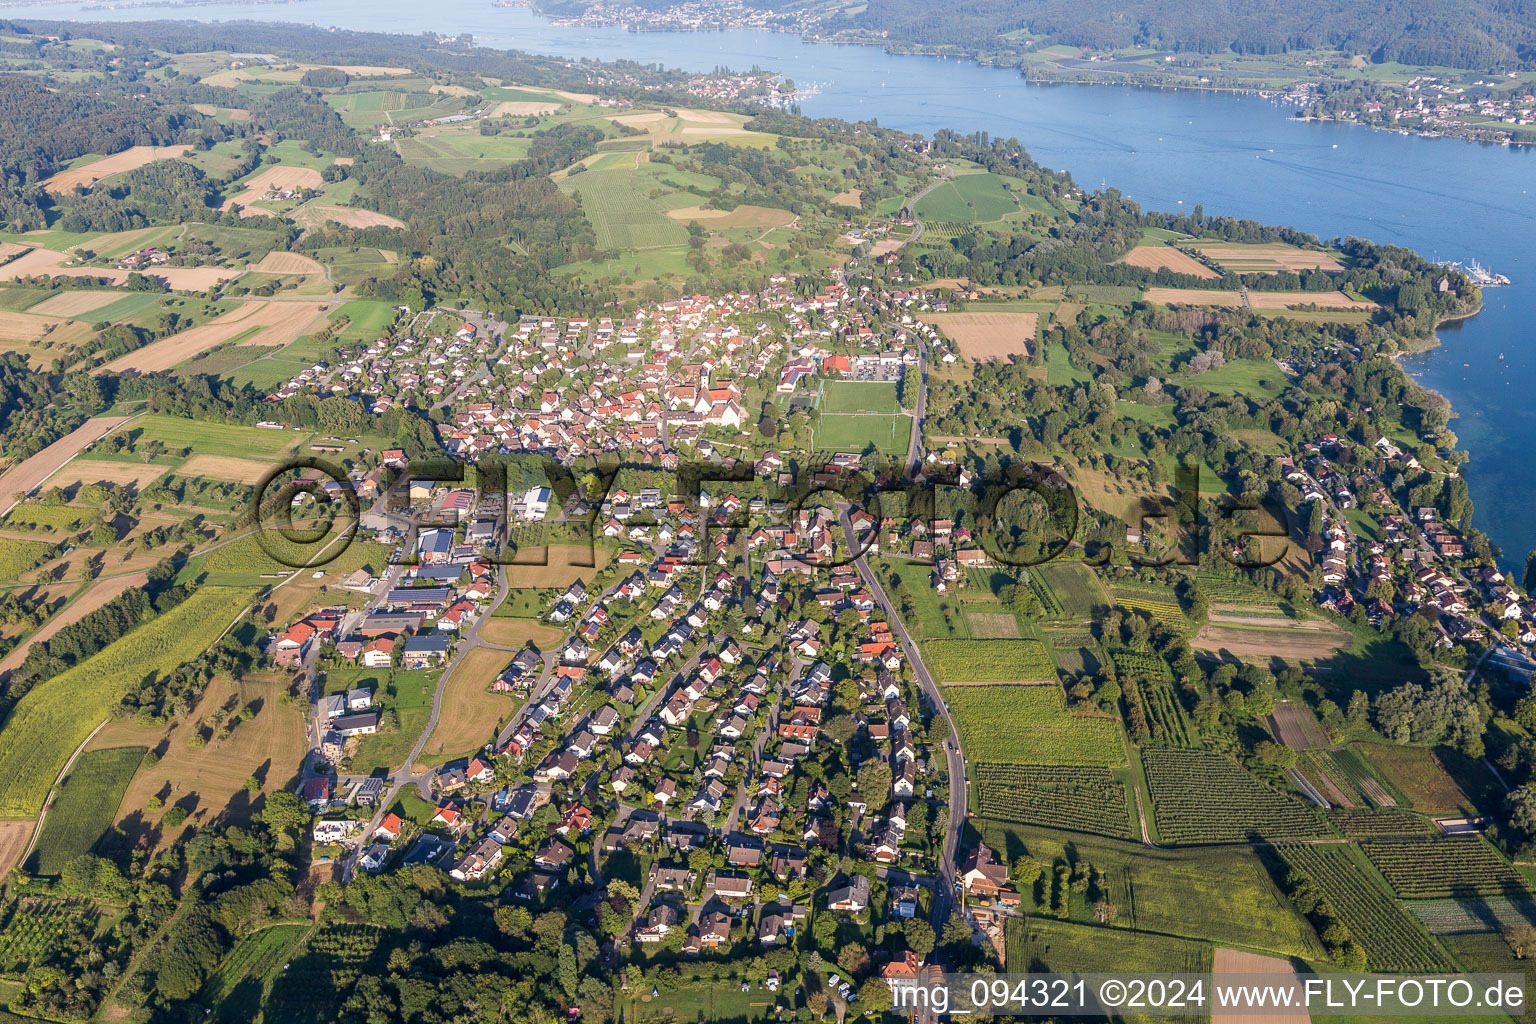 Luftbild von Dorfkern an den Fluss-/Bodensee-Uferbereichen des Rhein in Öhningen im Bundesland Baden-Württemberg, Deutschland